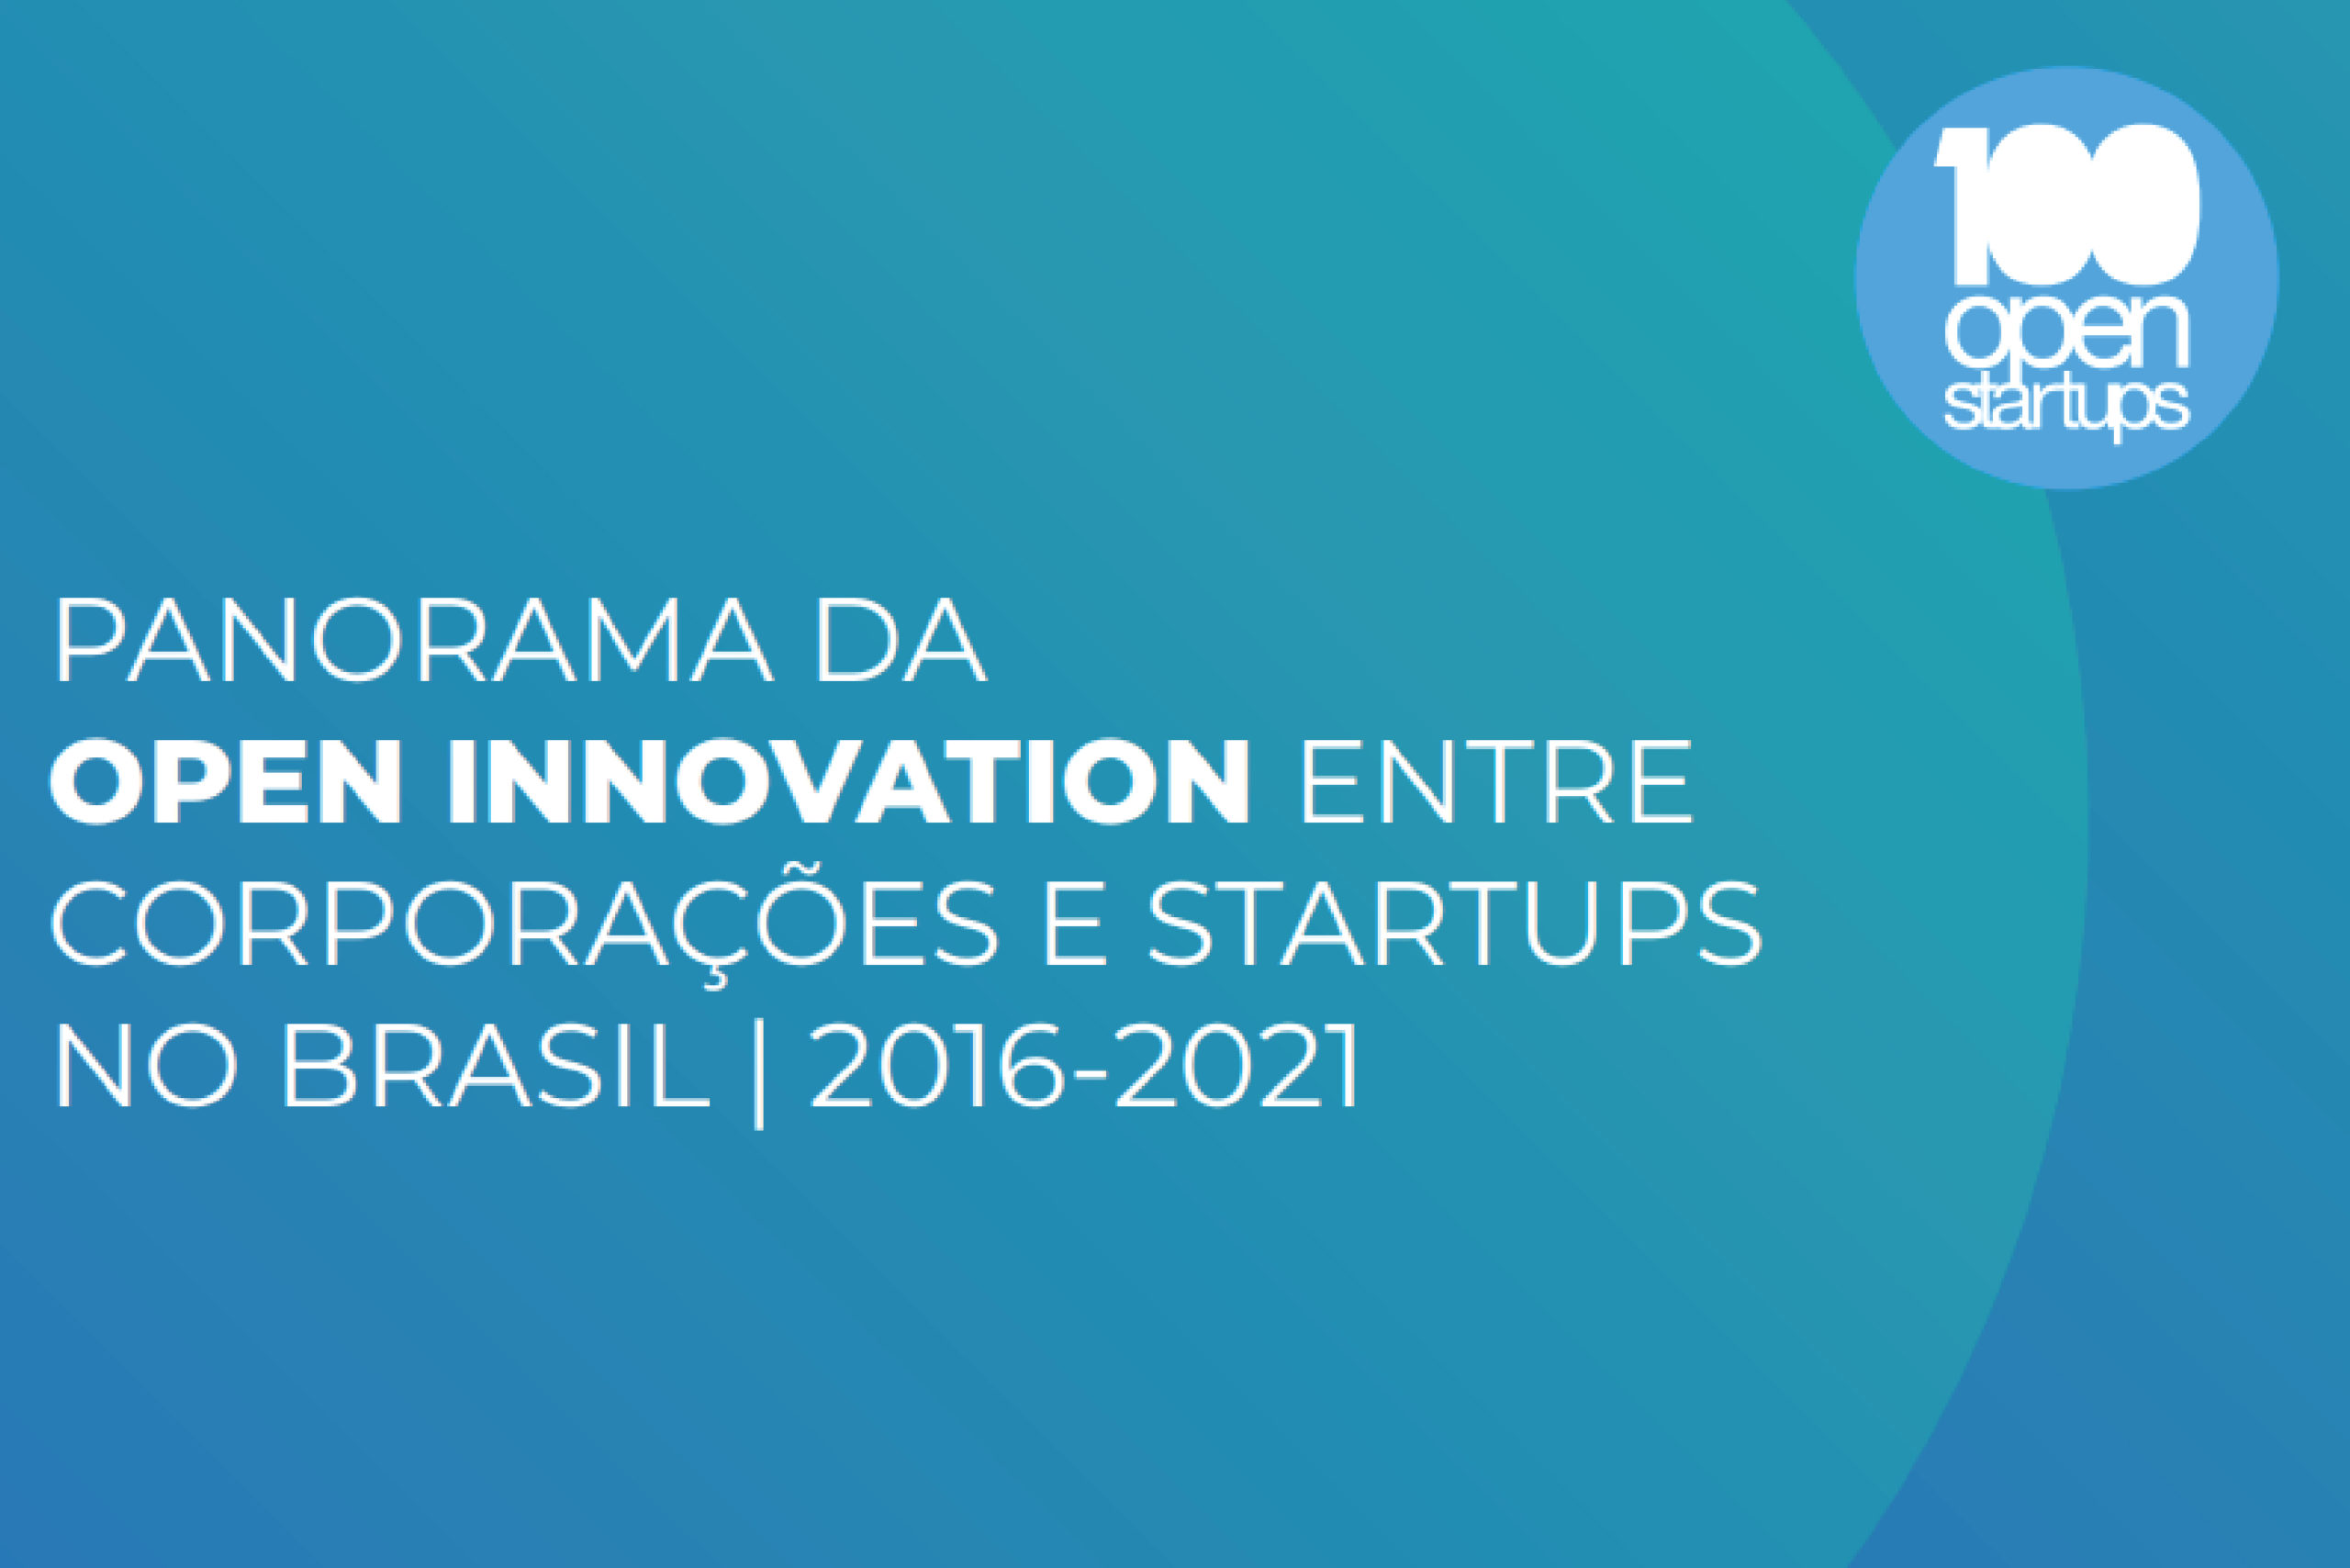 Panorama da Open Innovation com Startups no Brasil I 2016-2021